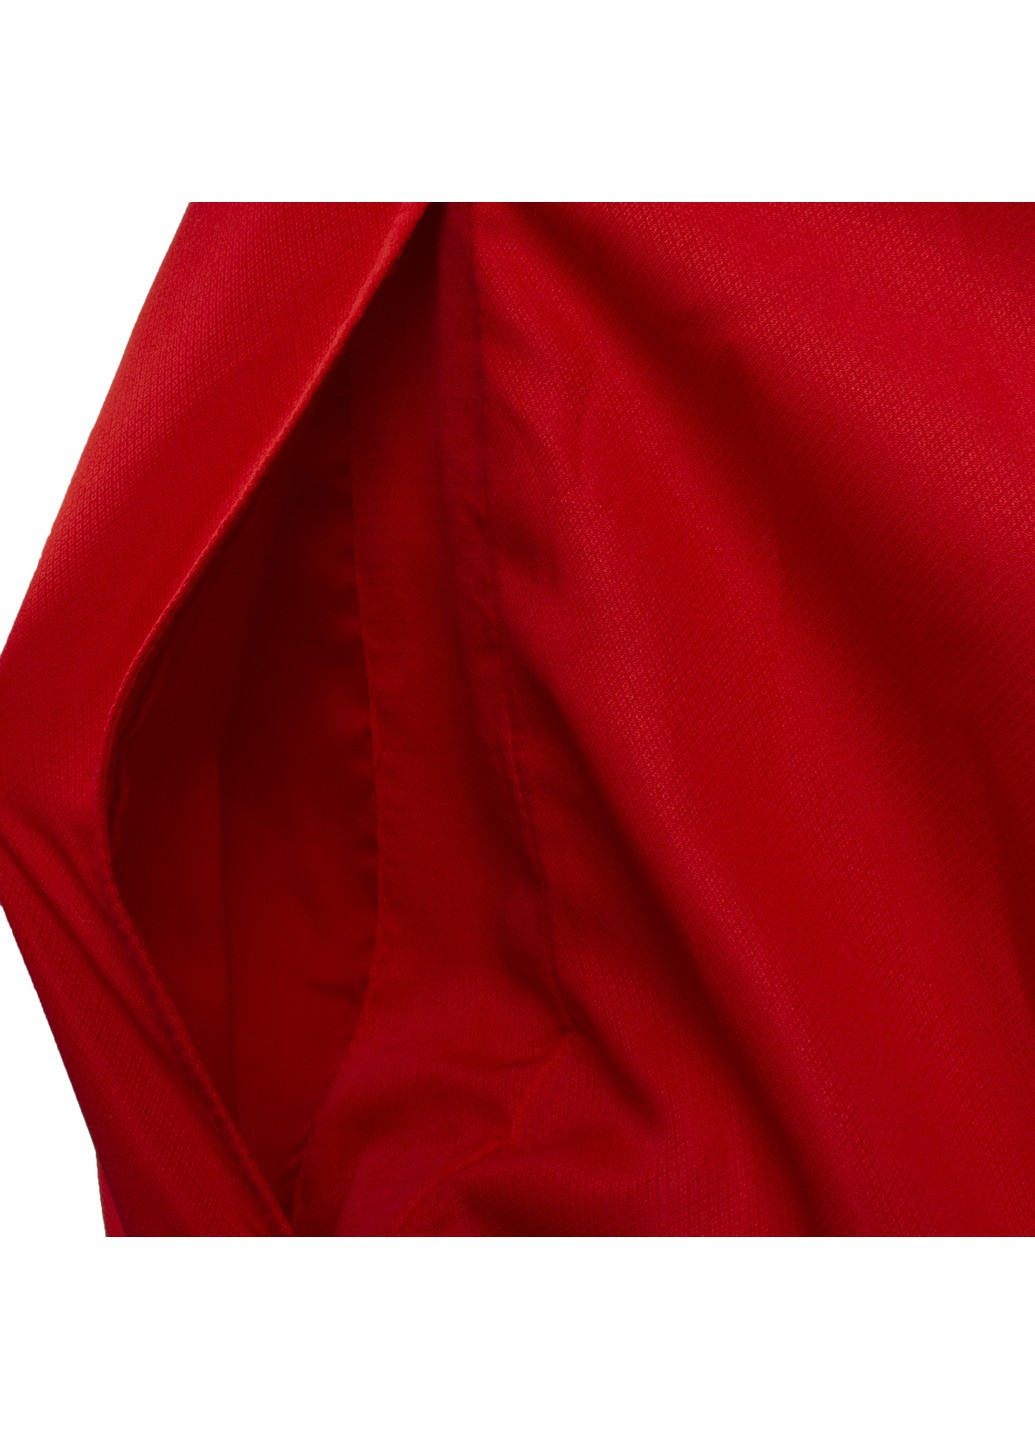 Красная куртка мужская New Balance